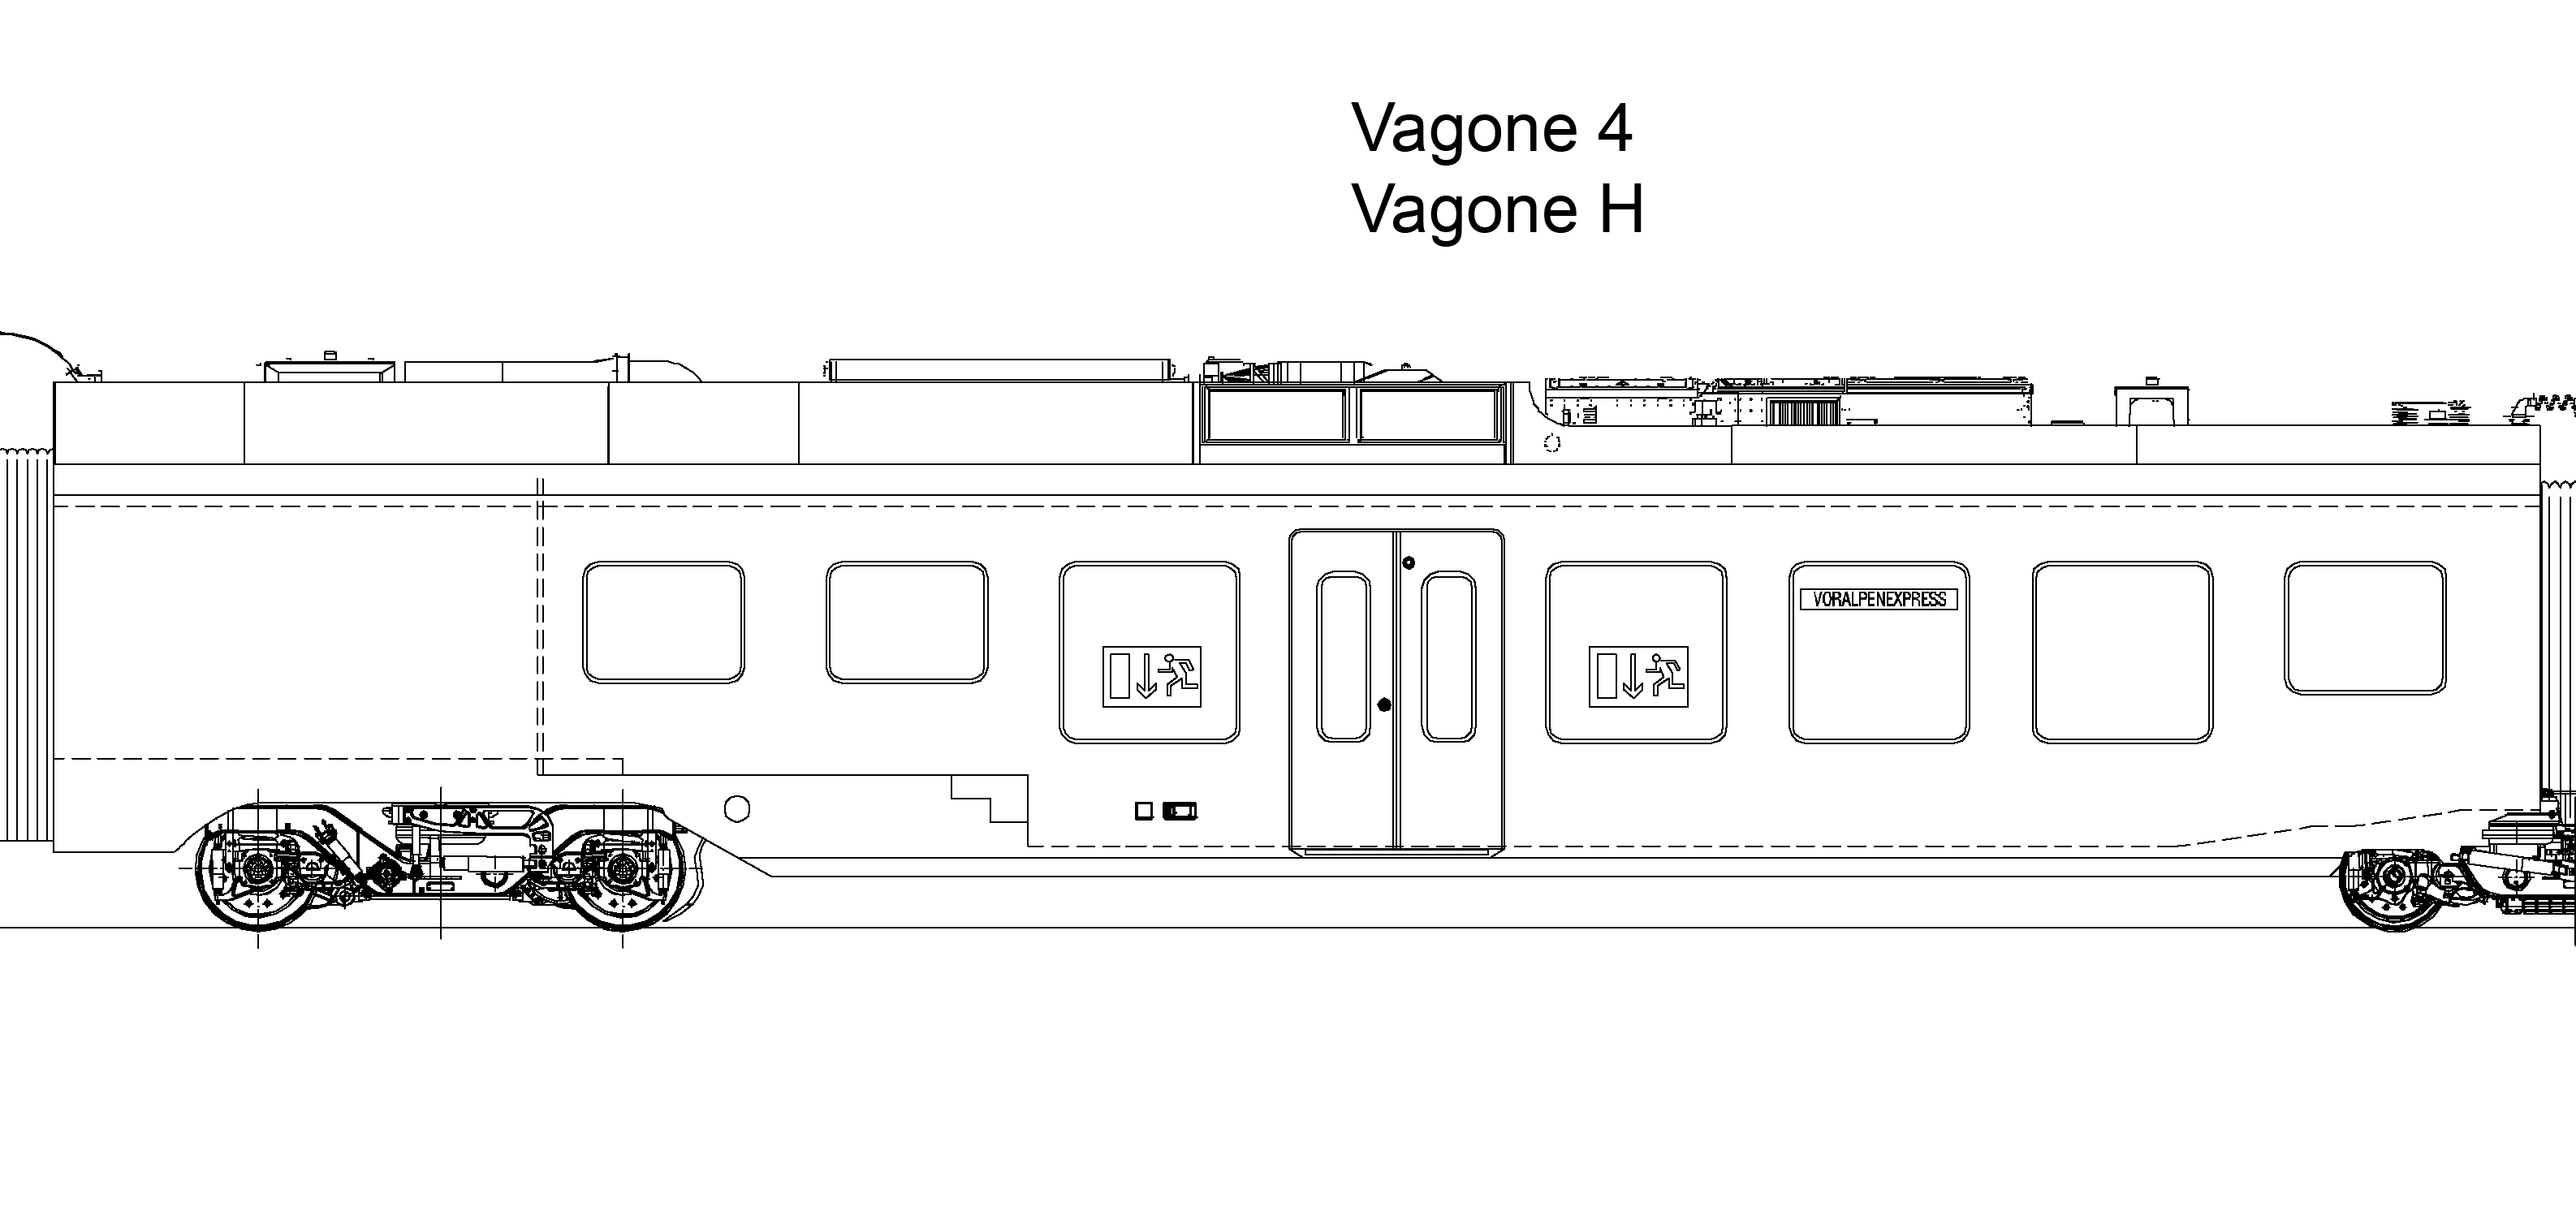 Traverso, Vagone 4, Vagone H